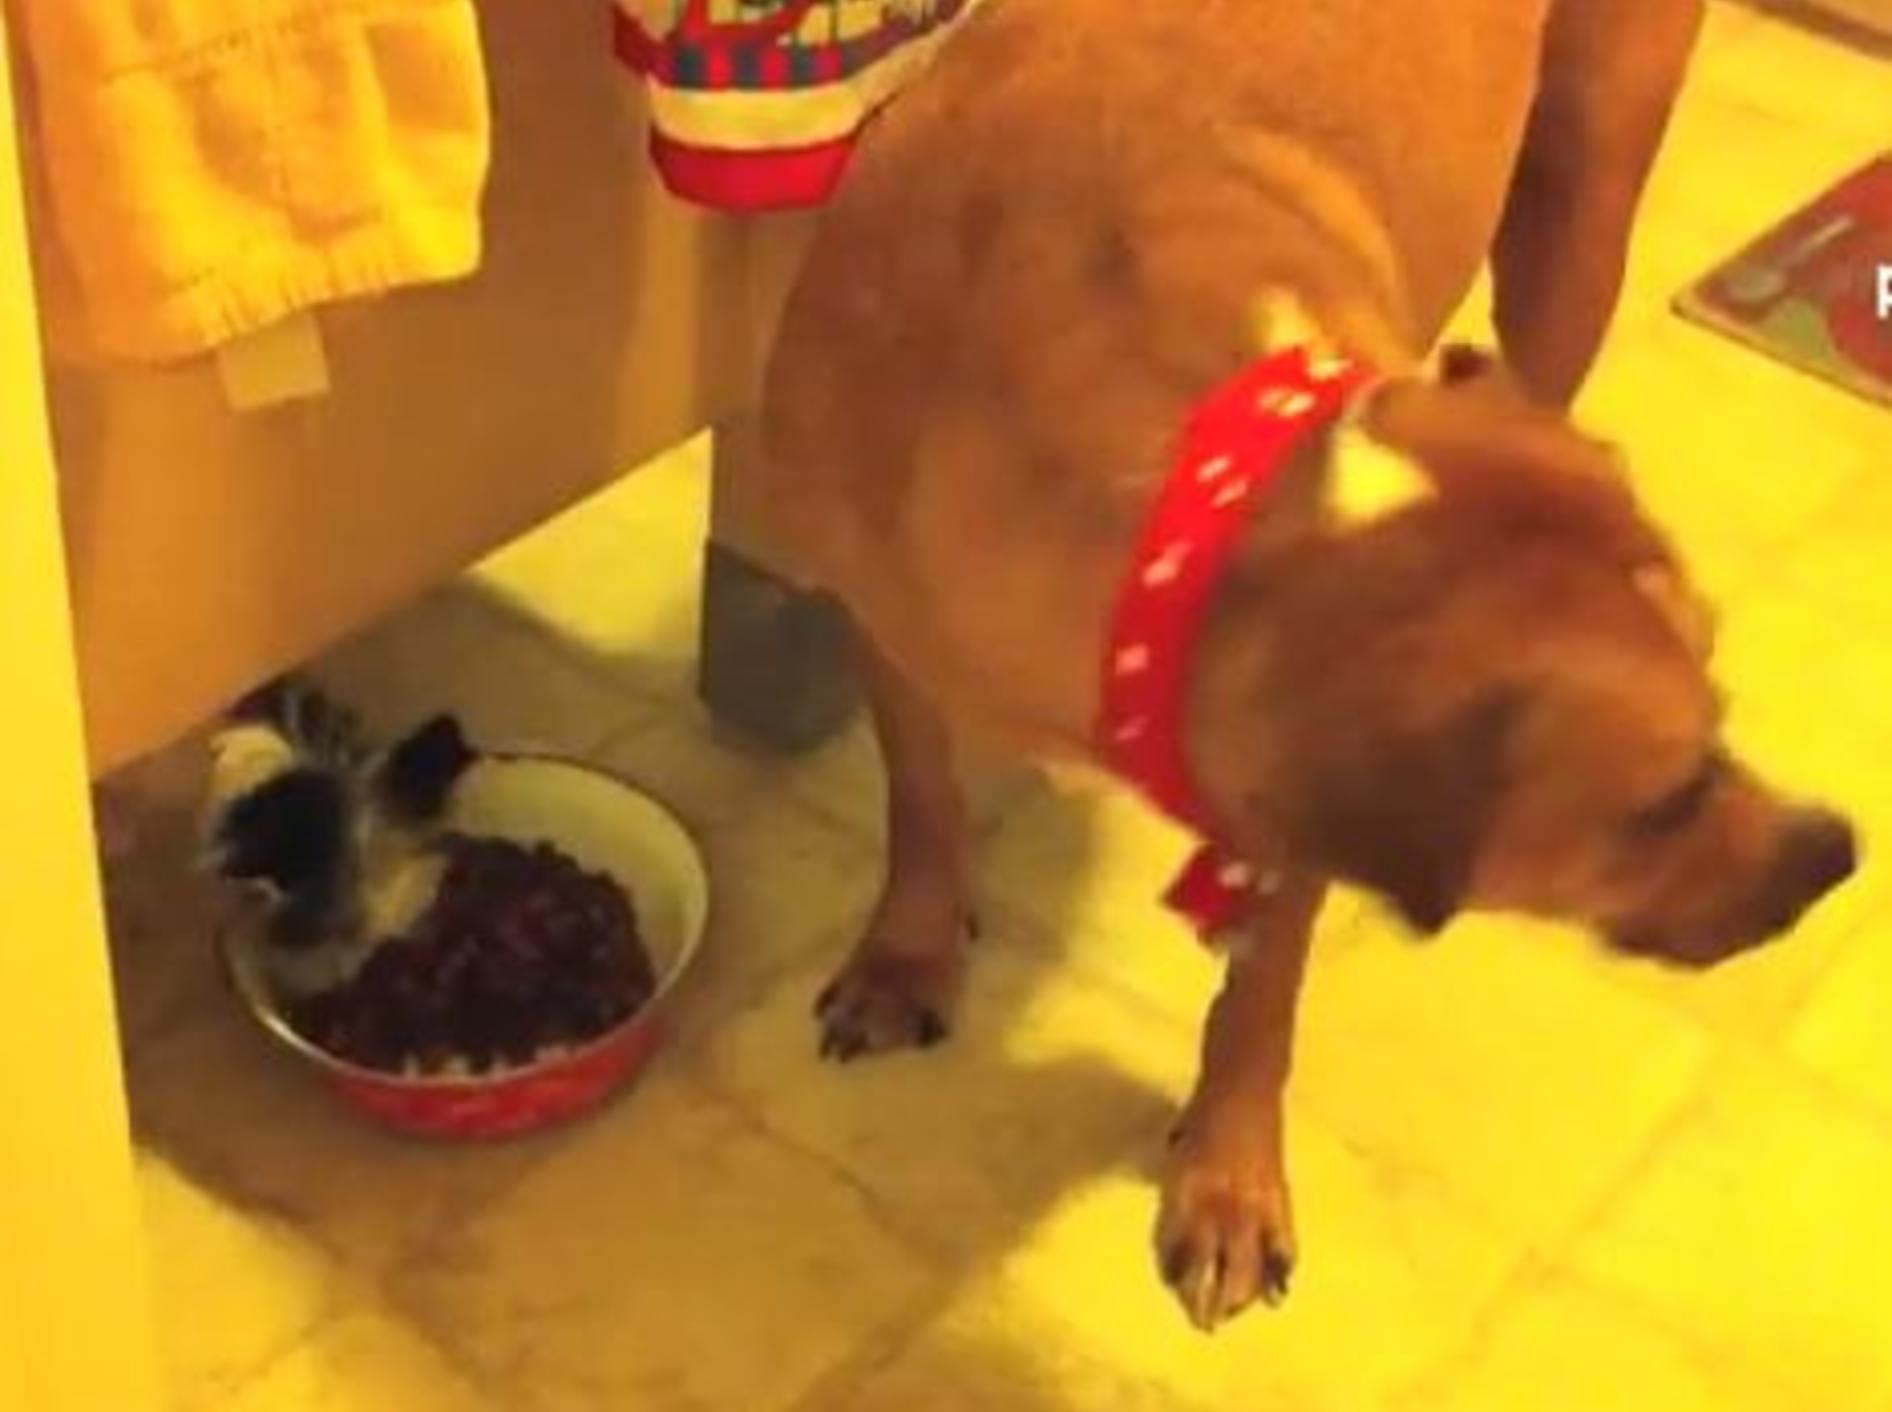 Kleiner Hund mopst großem Hund sein Essen — Bild: Youtube / PETSAMI